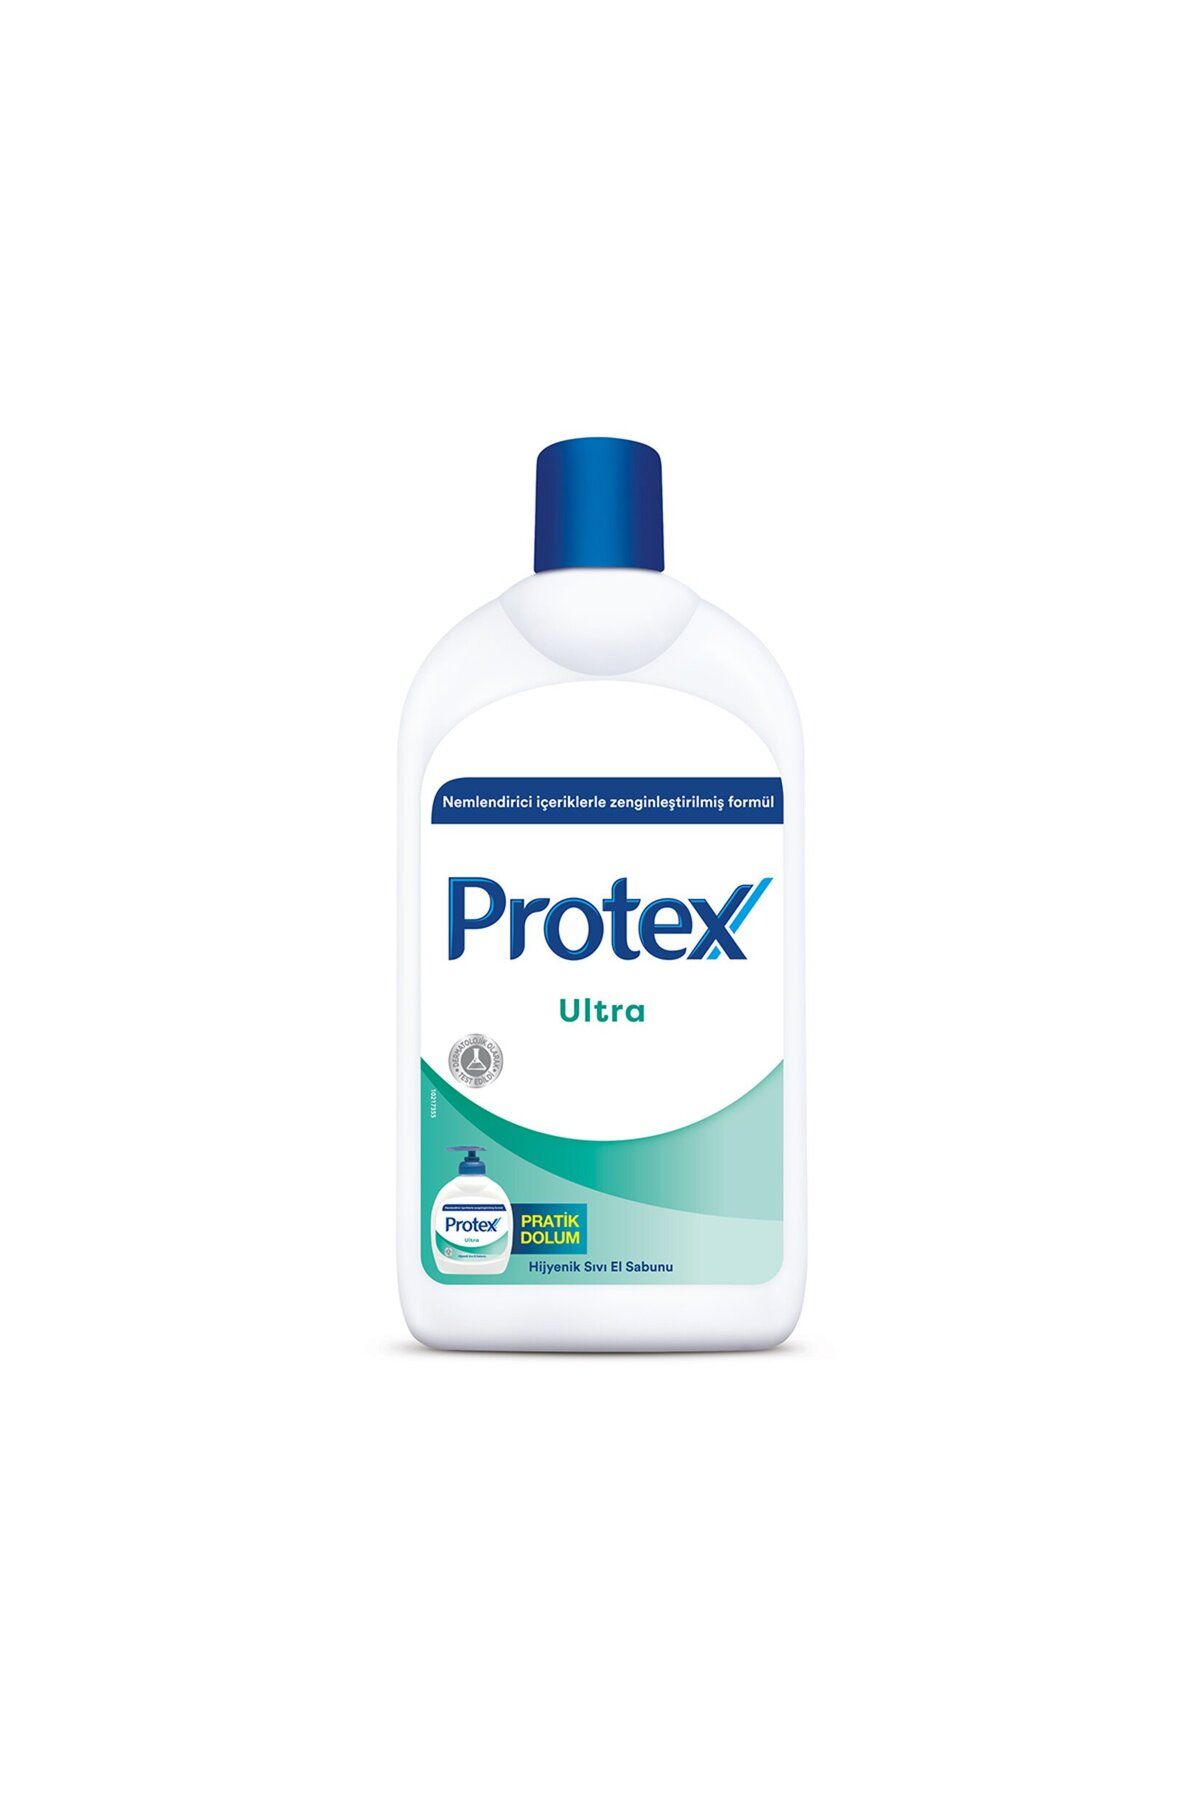 Protex Ultra Koruma Sıvı Sabun 700 ml